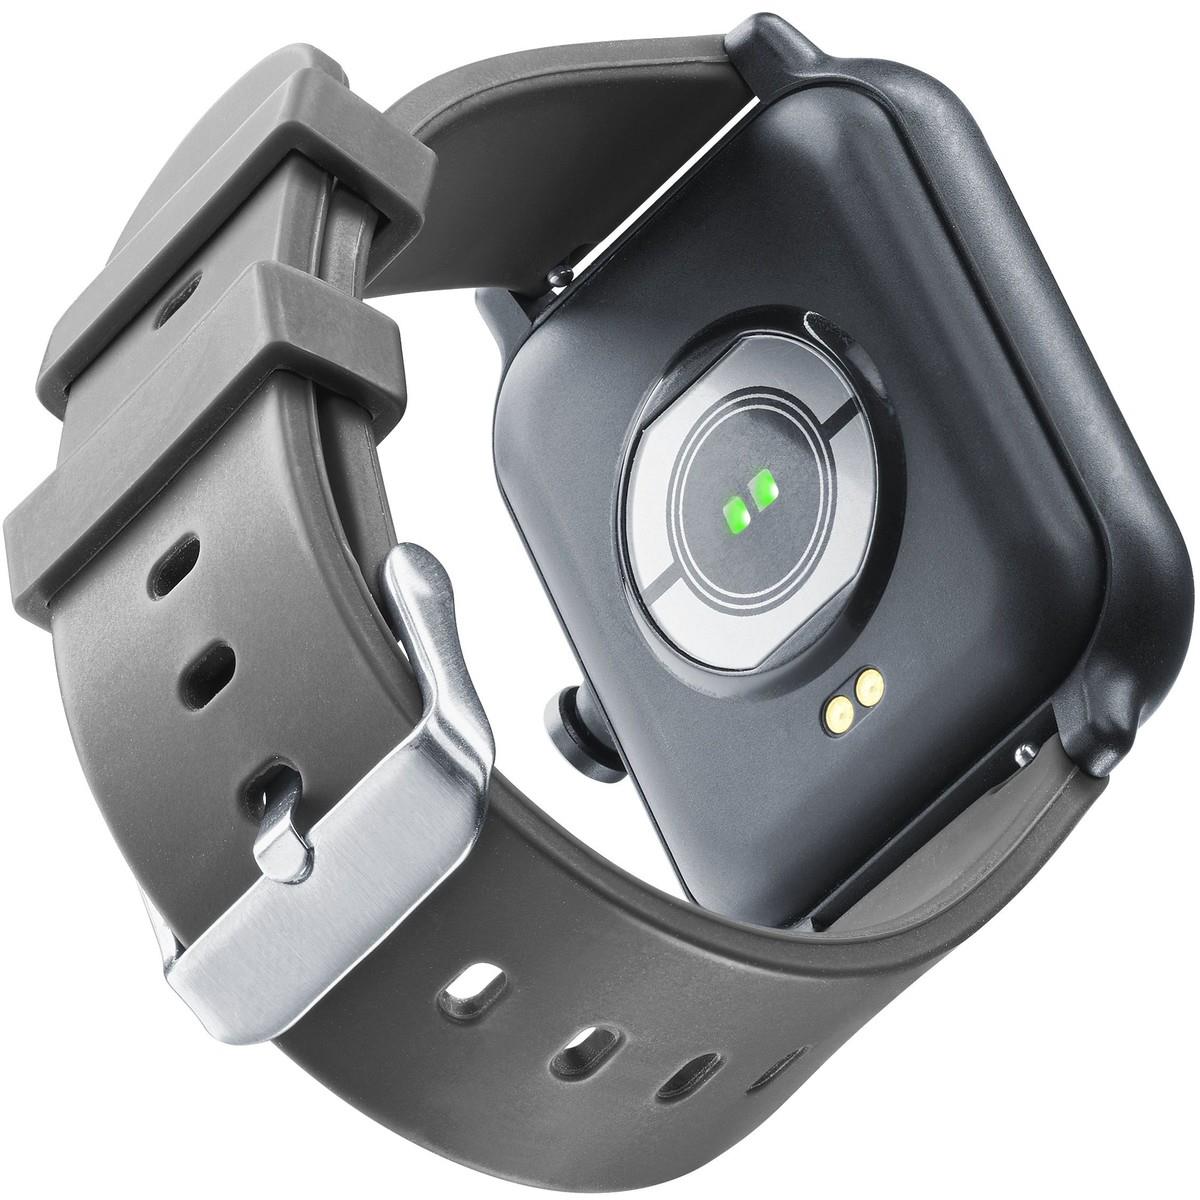 Smartwatch ION für bluetoothfähige Geräte